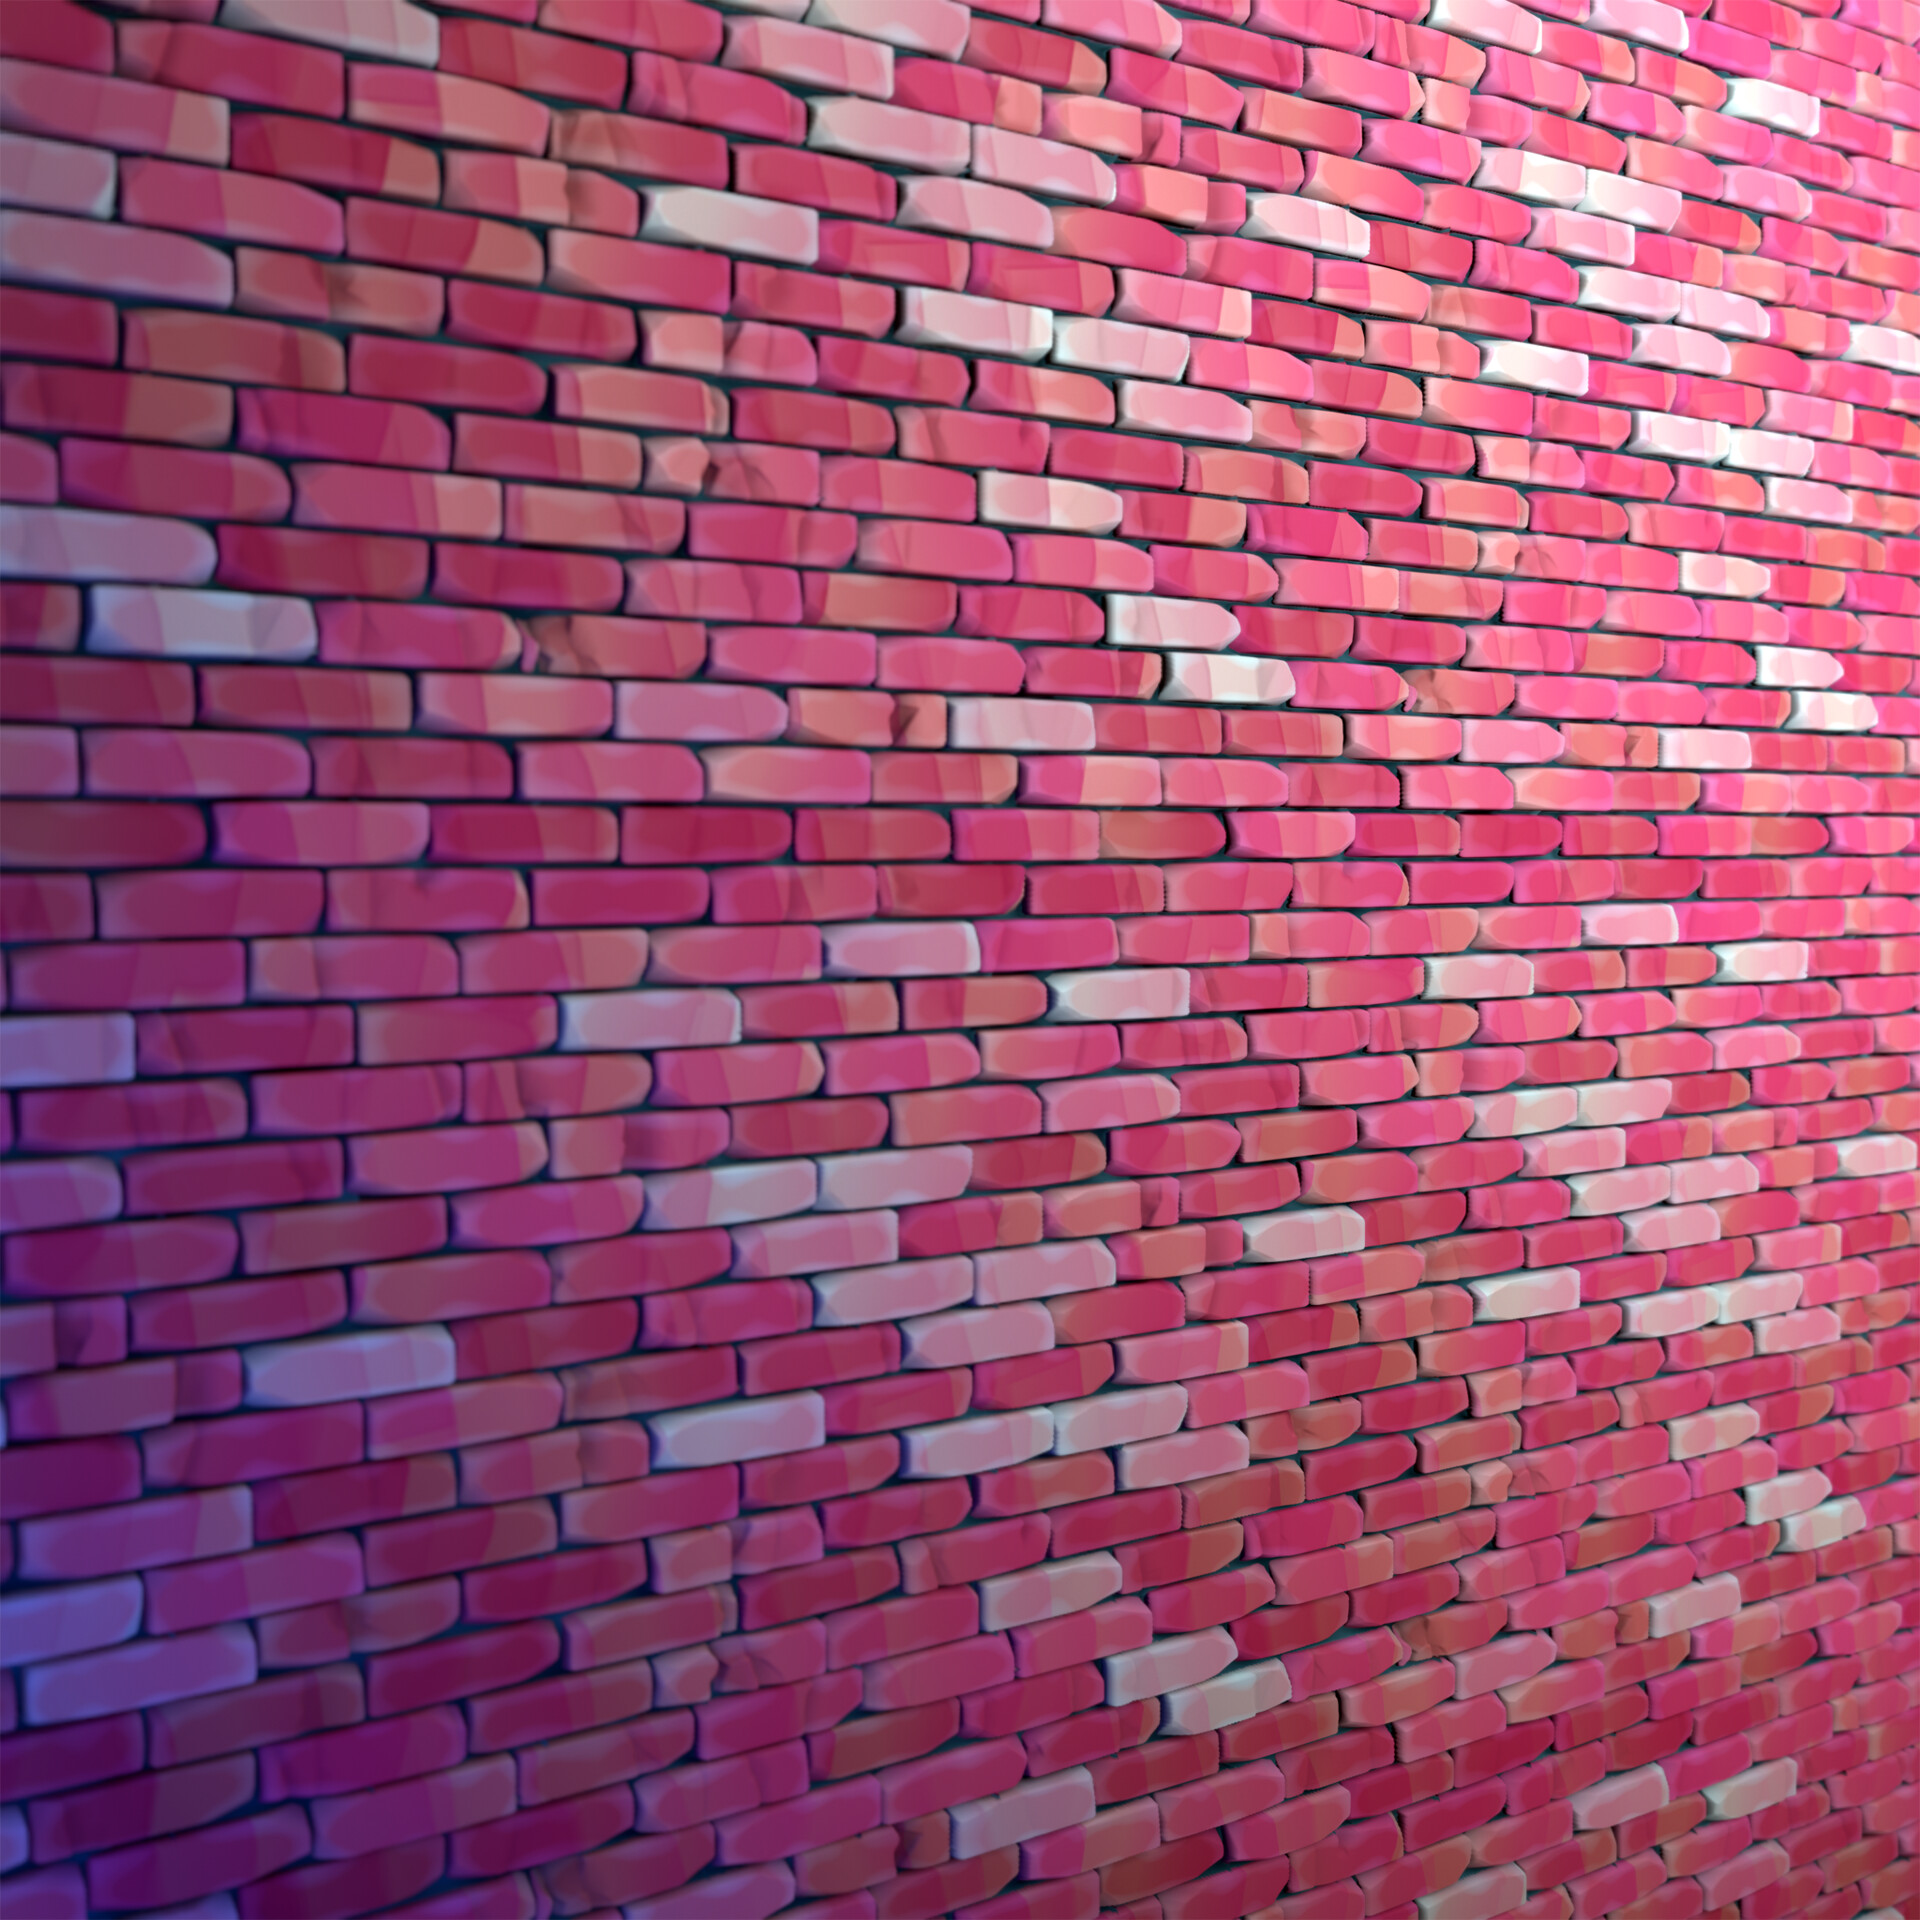 ArtStation - Cartoon brick wall